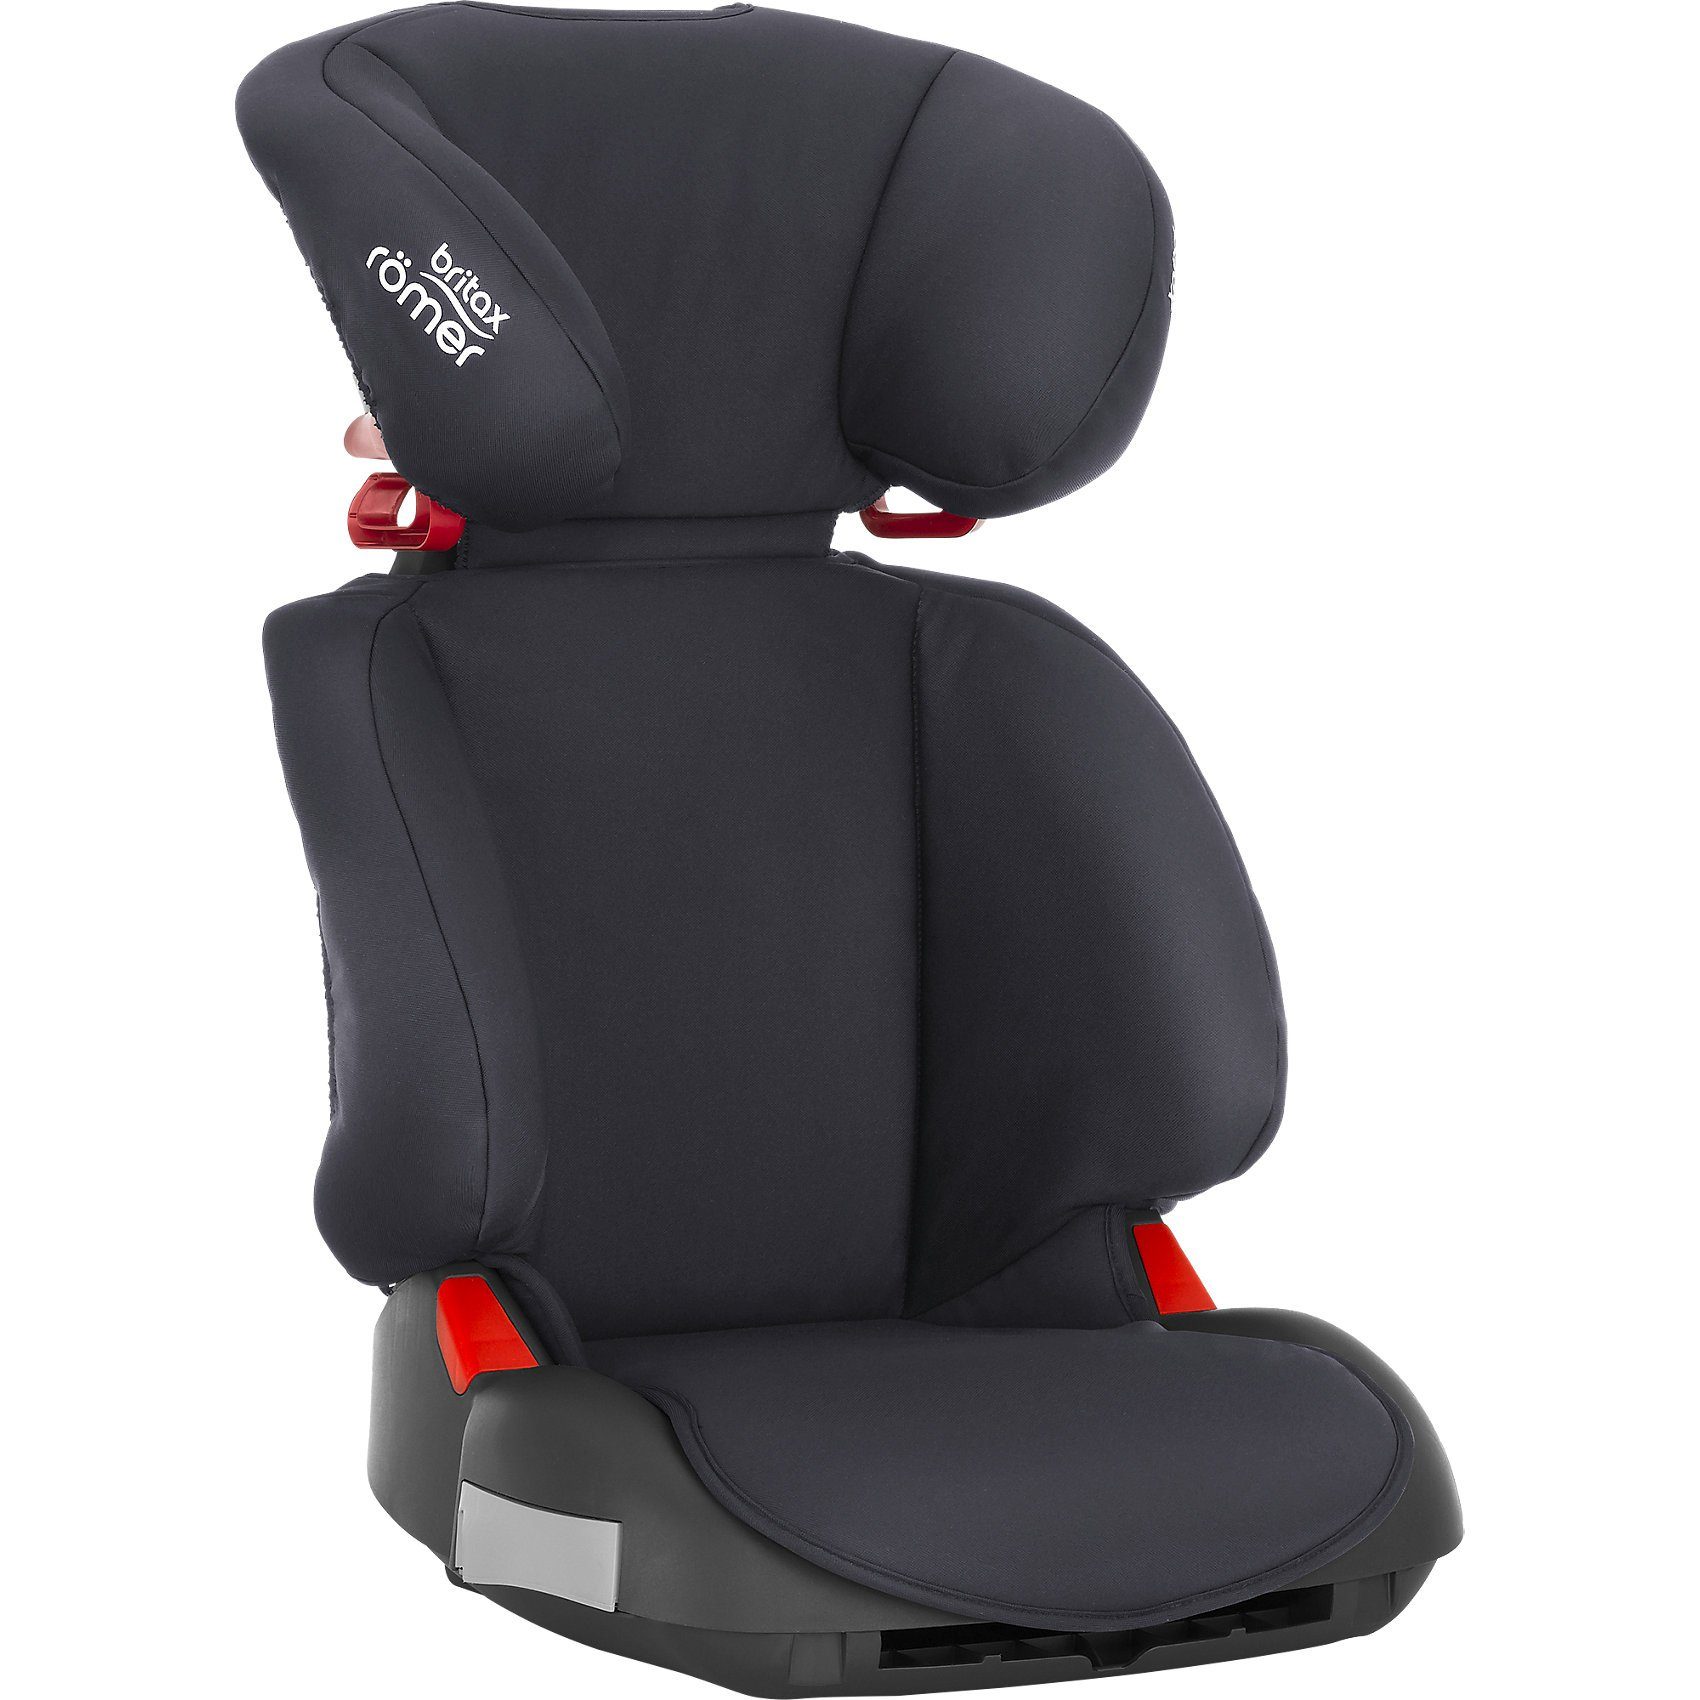 Kindersitz Auto Bis Wann - Autositz